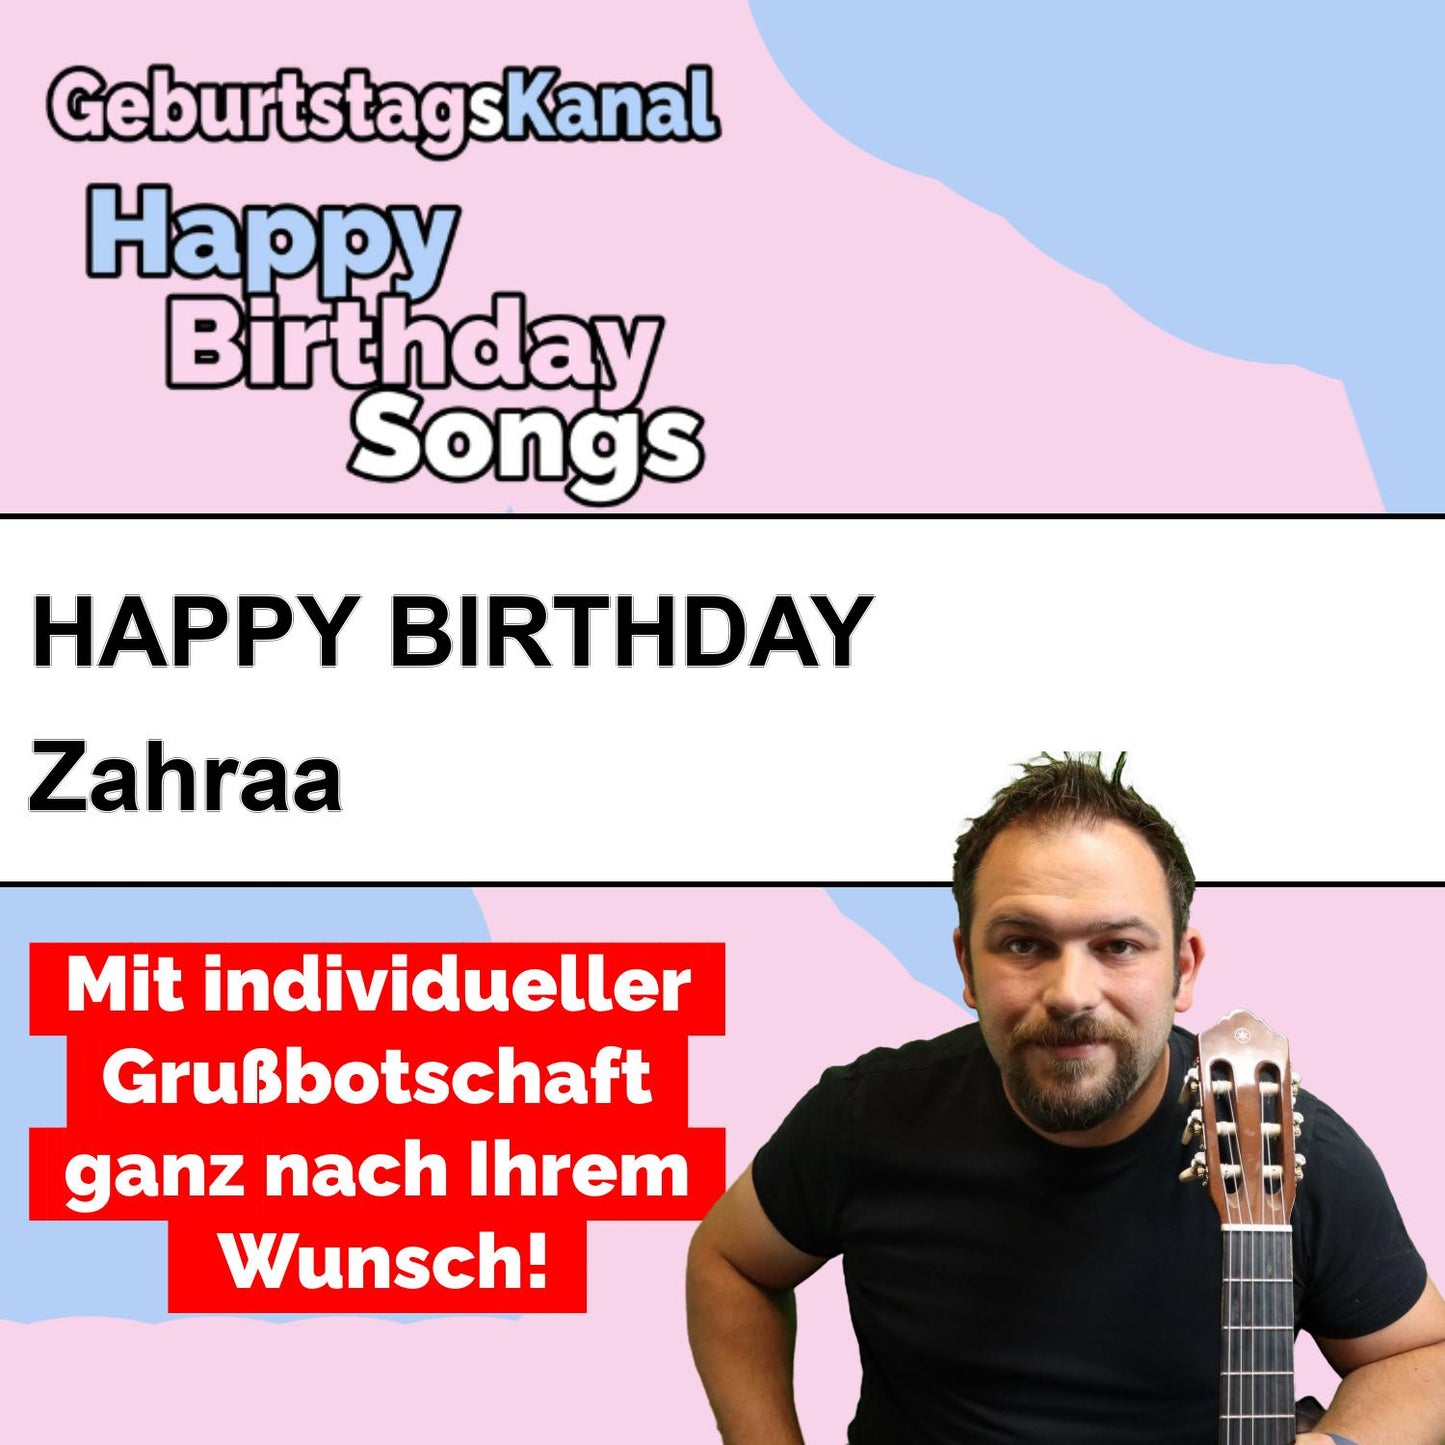 Produktbild Happy Birthday to you Zahraa mit Wunschgrußbotschaft